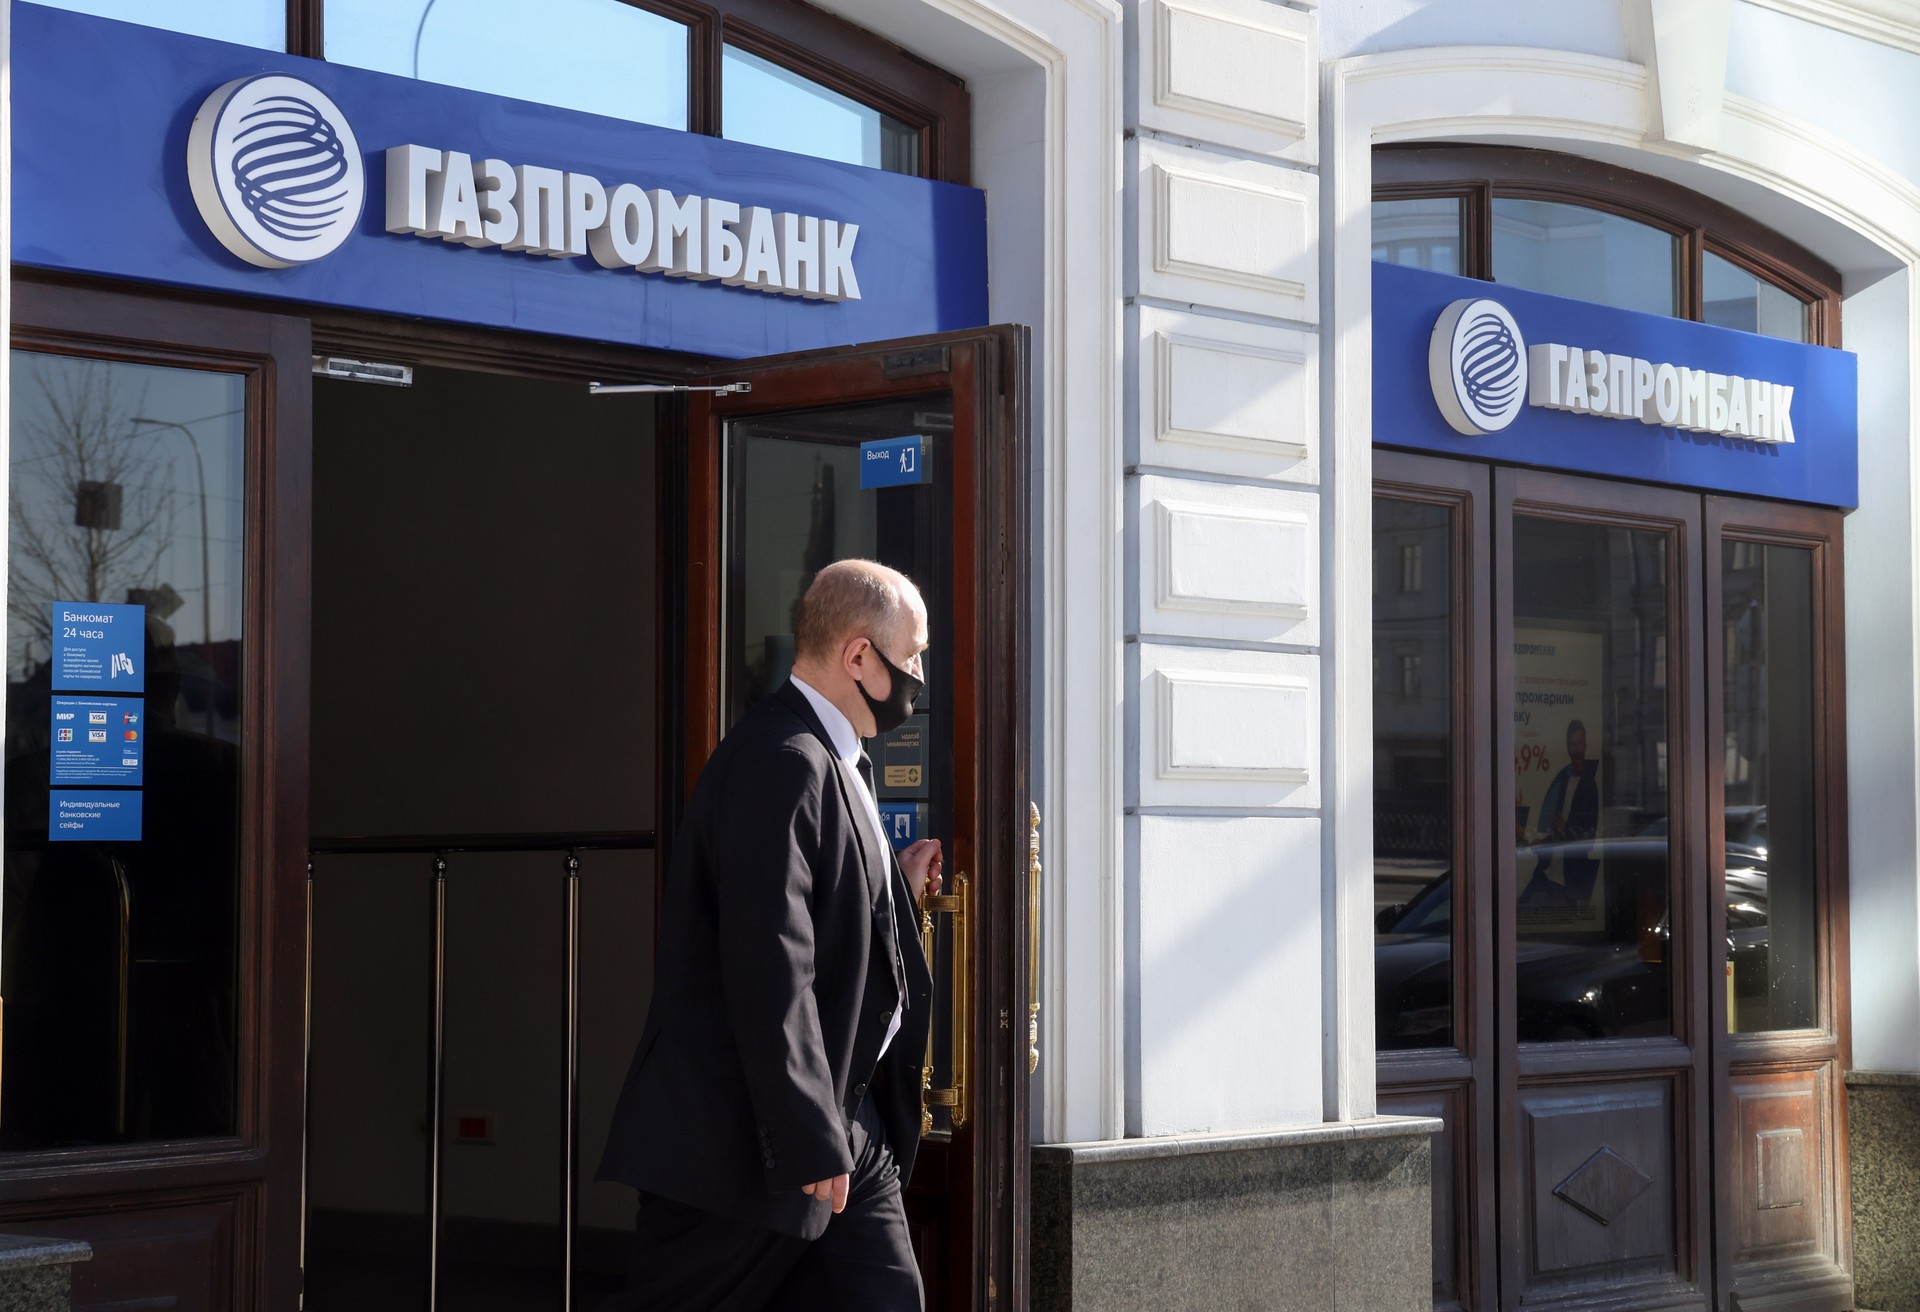 Белорусские банки под санкциями. Газпромбанк. ПАО Газпромбанк. Газпромбанк картинки. Банк Гас Газпромбанк.